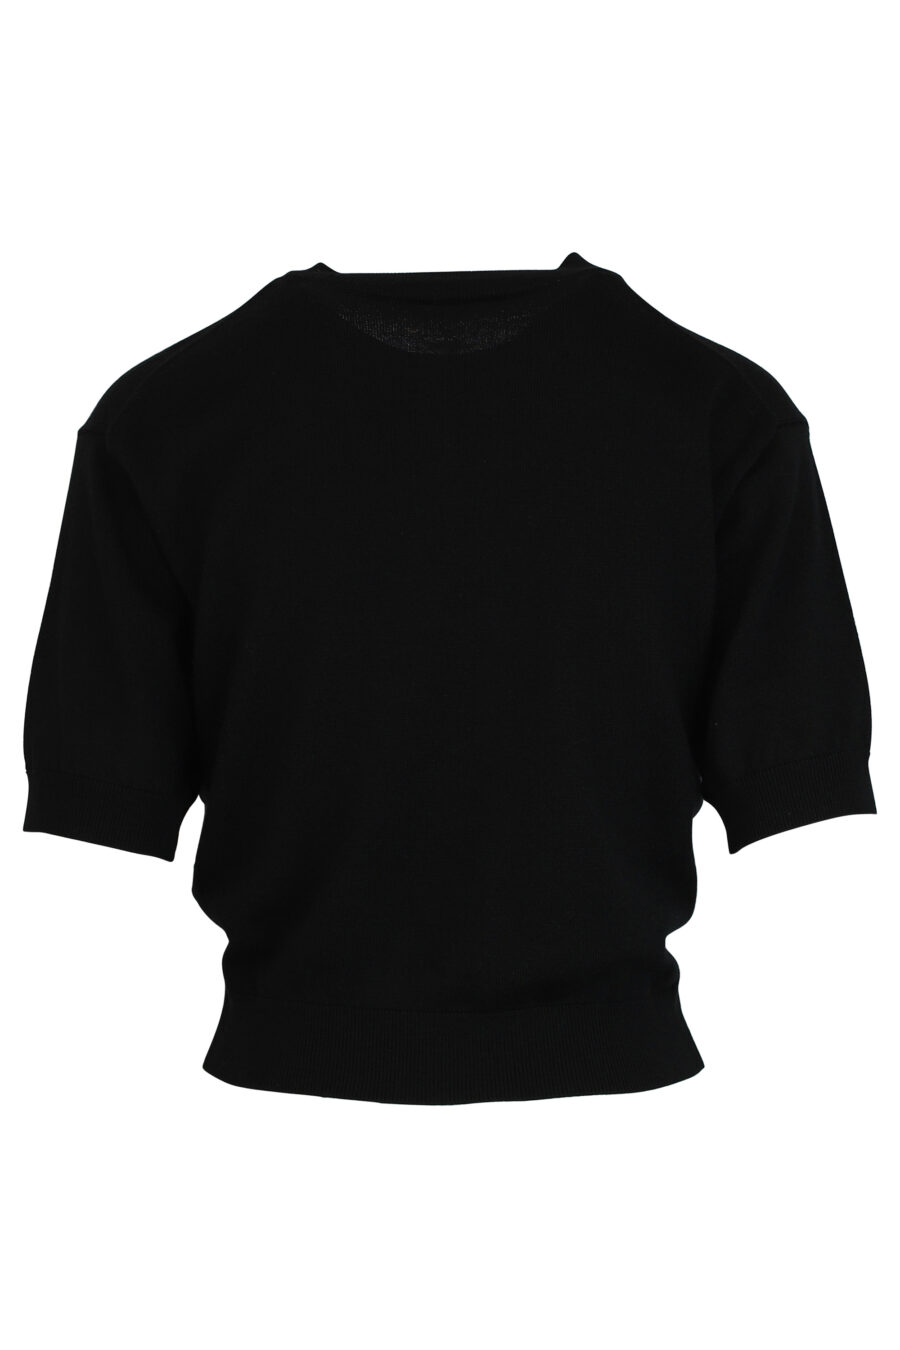 Schwarzer Pullover mit orangem Mini-Logo - 3612230446106 2